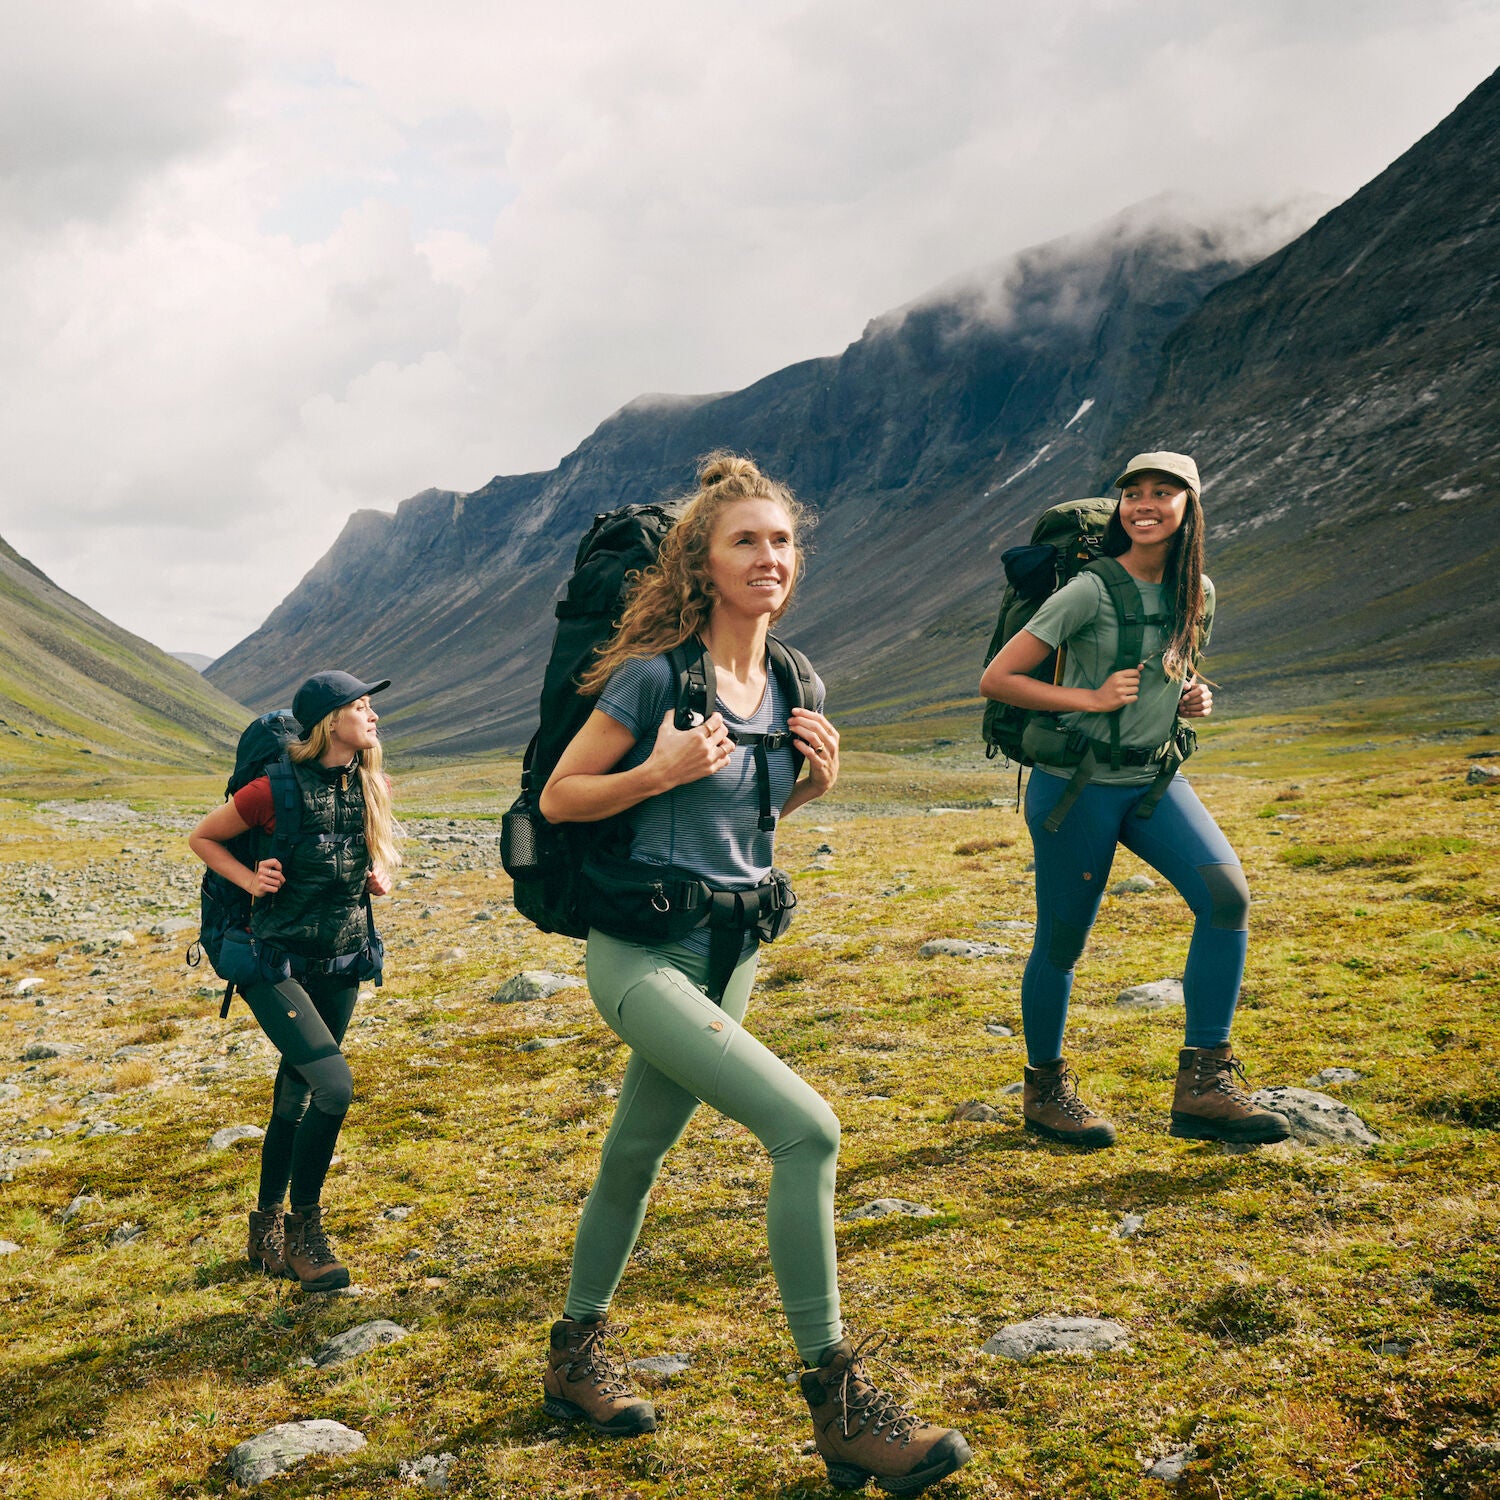 Fjallraven Womens Abisko Trekking HD Tights, Price Match + 3-Year Warranty